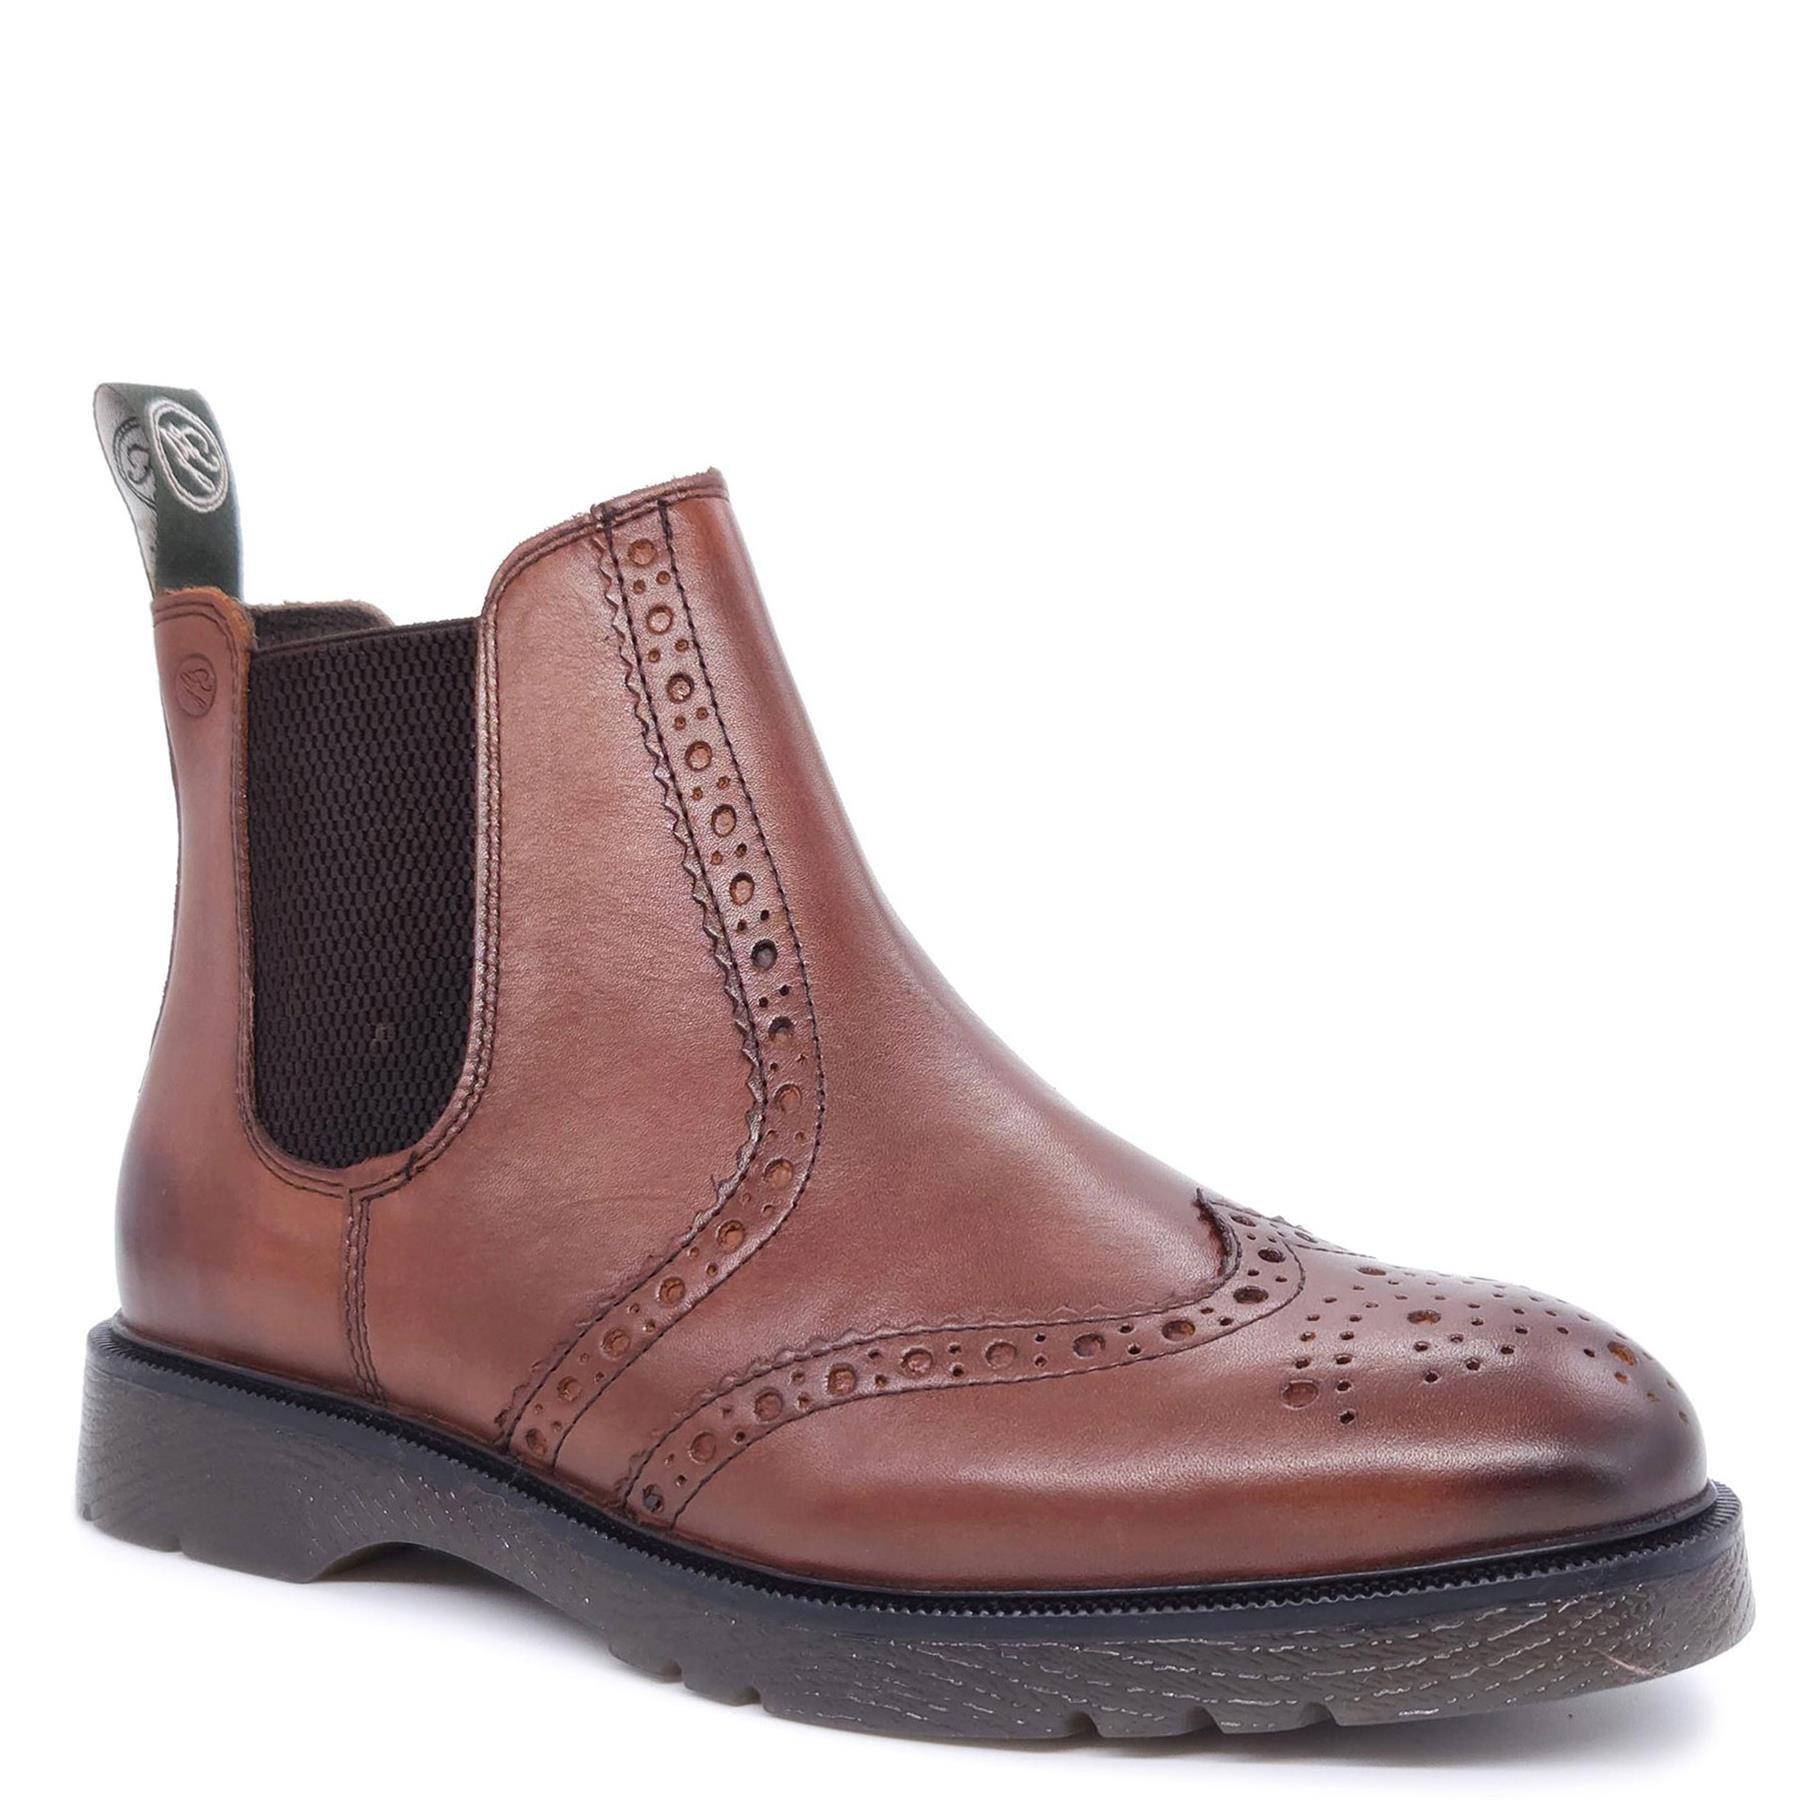 Кожаные ботинки челси с эффектом броги Warkton Frank James, коричневый кожаные ботинки челси с эффектом броги cheltenham frank james коричневый